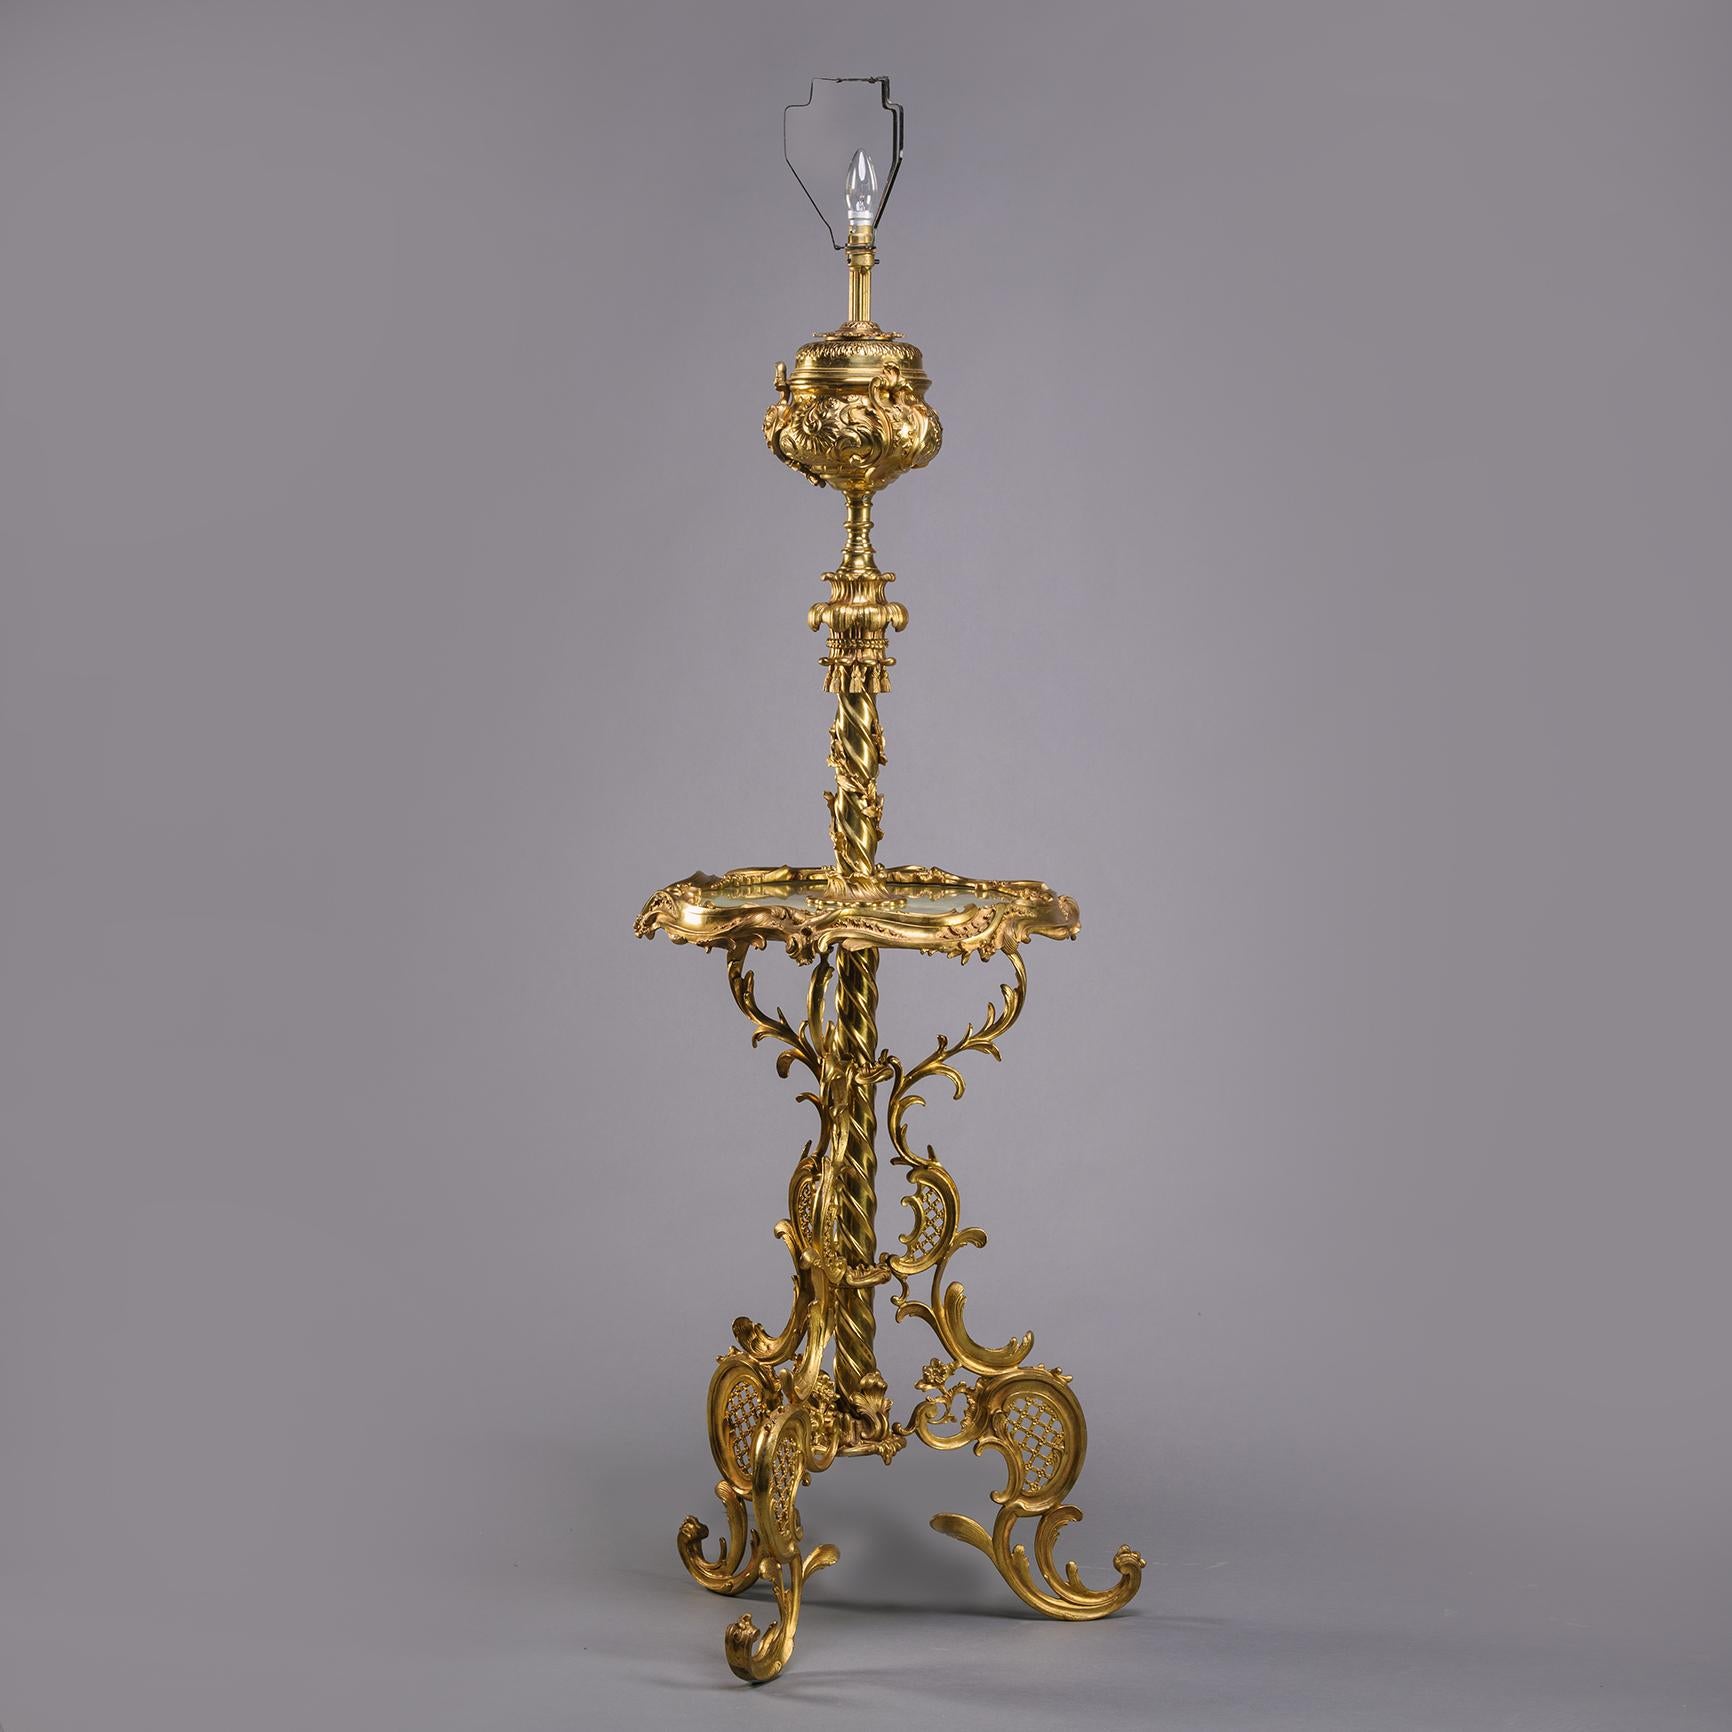 Ein Edwardian Gilt-Bronze Standard Lampe Tier Tabelle.

Im Rokokostil gestaltet, mit spiralförmig geriffeltem Schaft, der eine Urne trägt, über der eine Glühbirne angebracht ist. Die mittlere Etage mit grünem Onyxaufsatz. Gestützt auf drei C-förmige